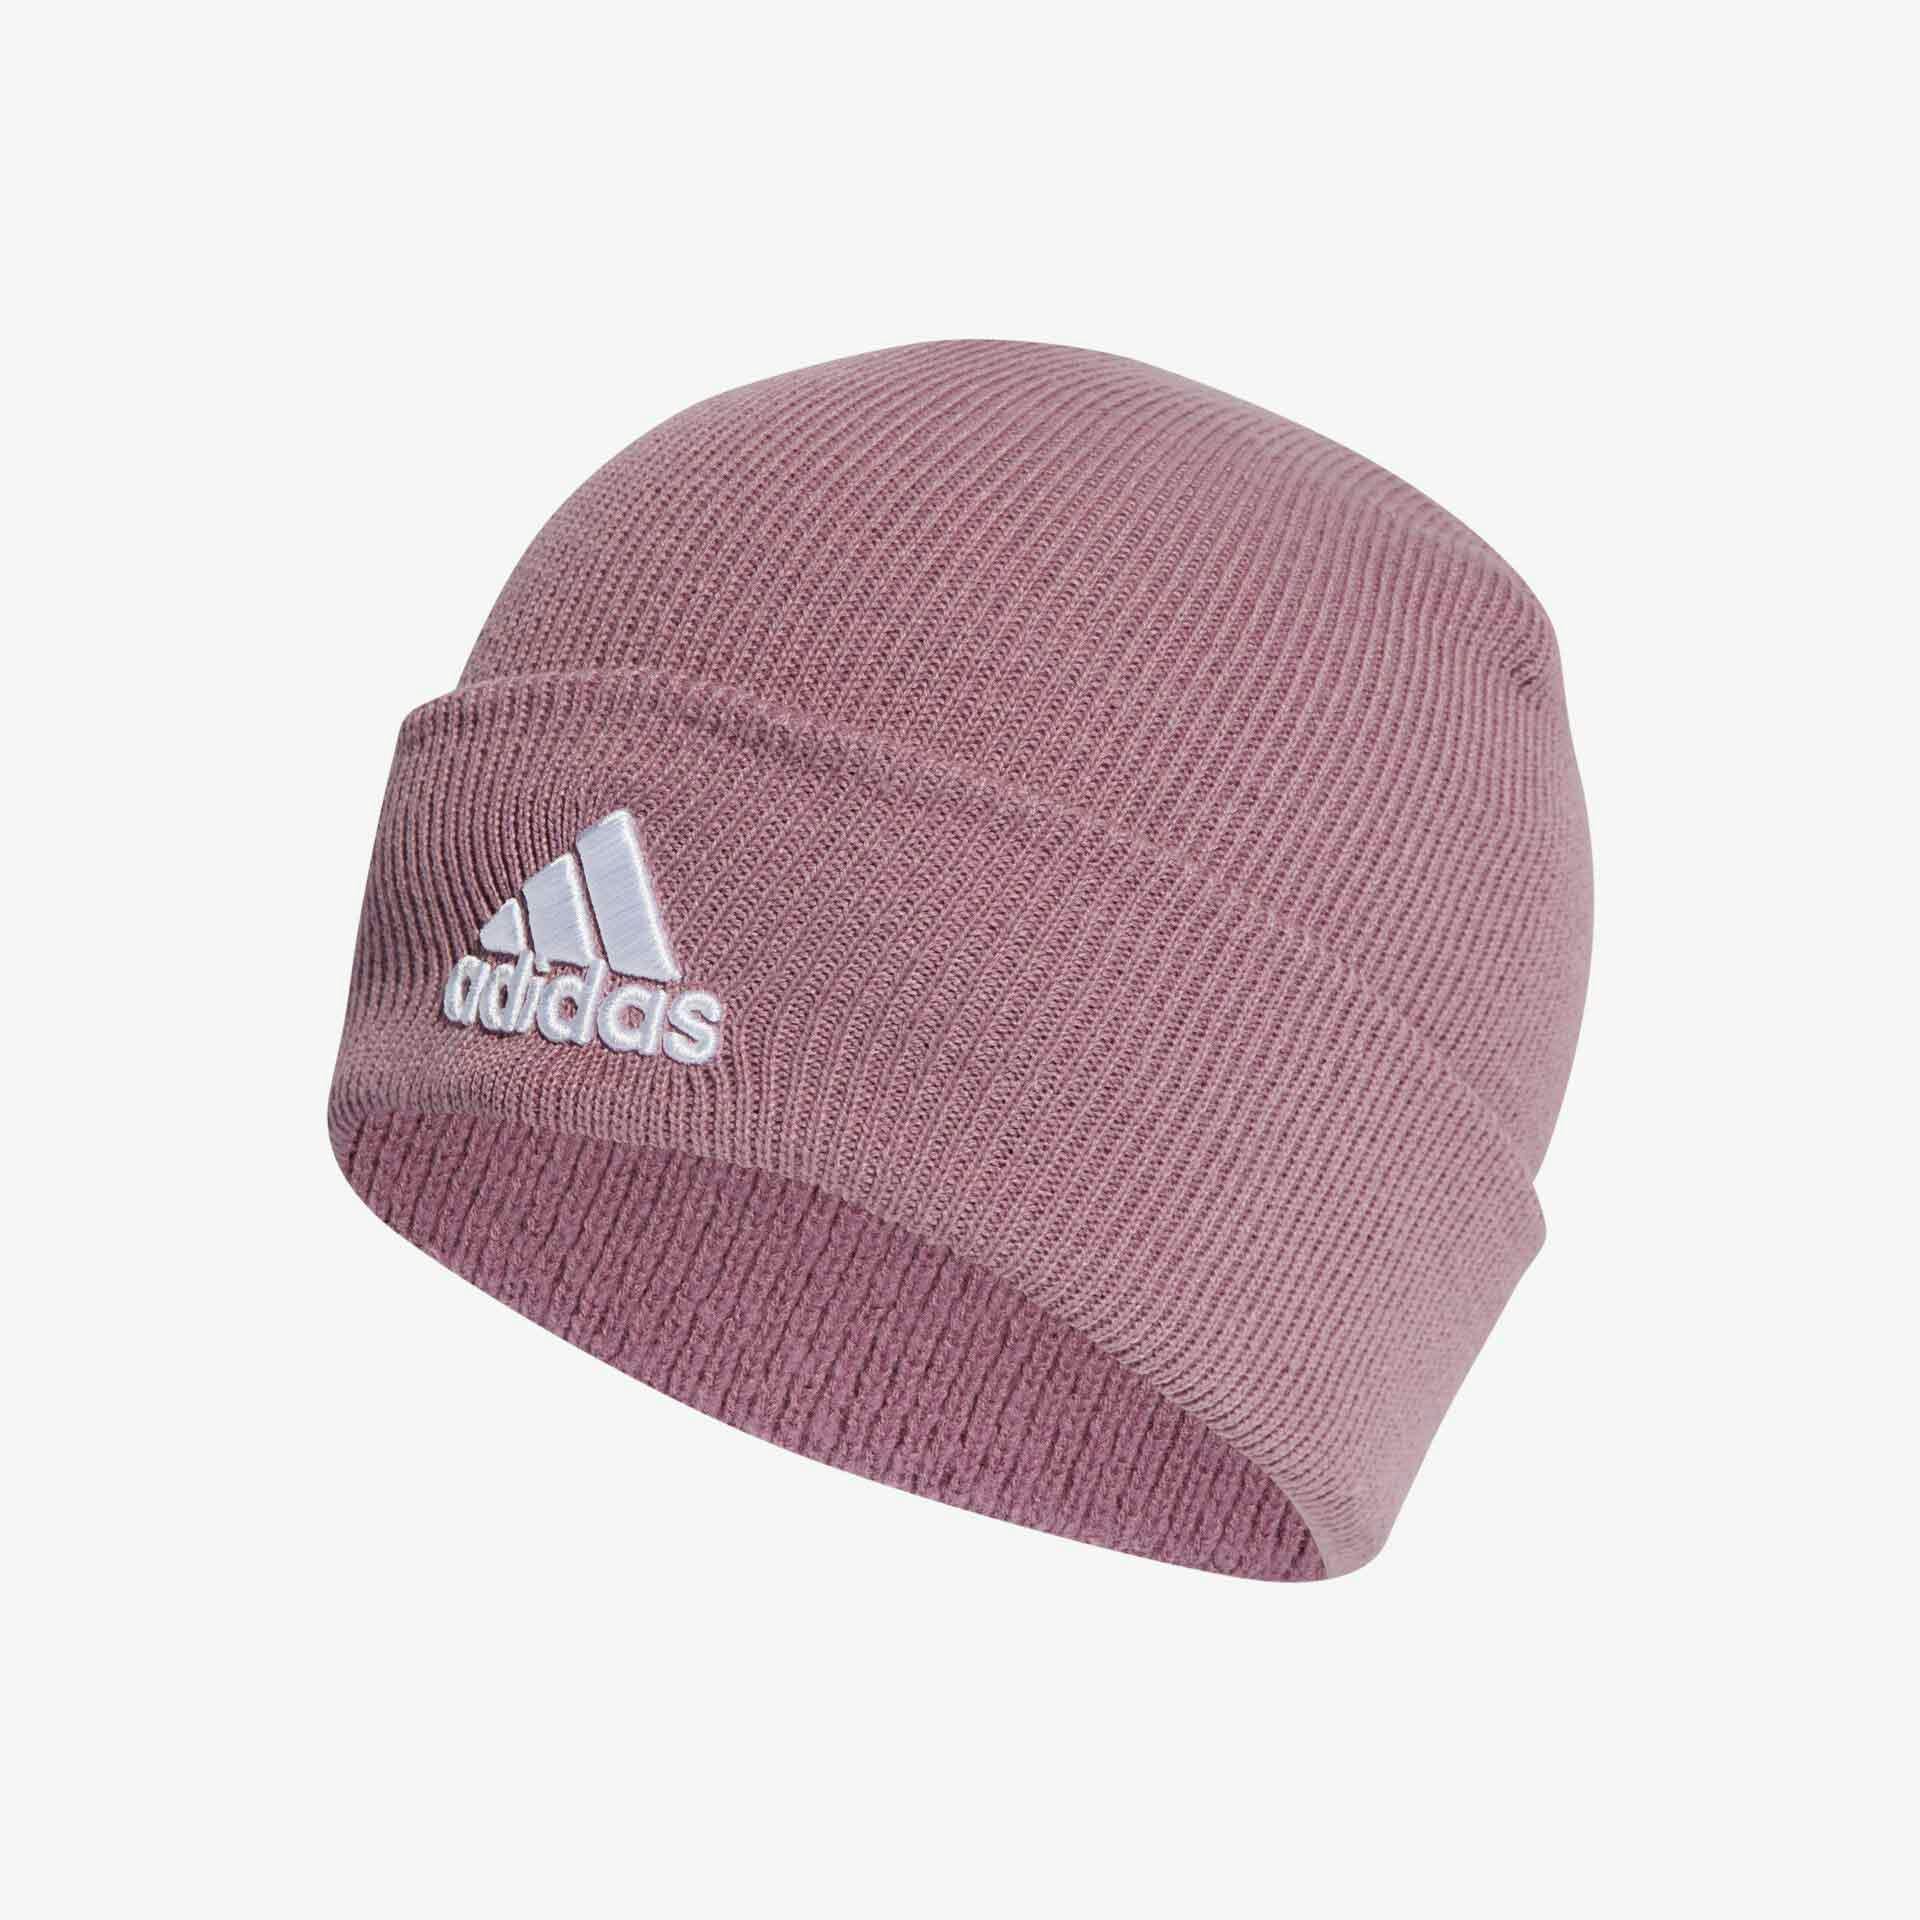 Schuhpark Beanie Mütze in Rosa von Adidas